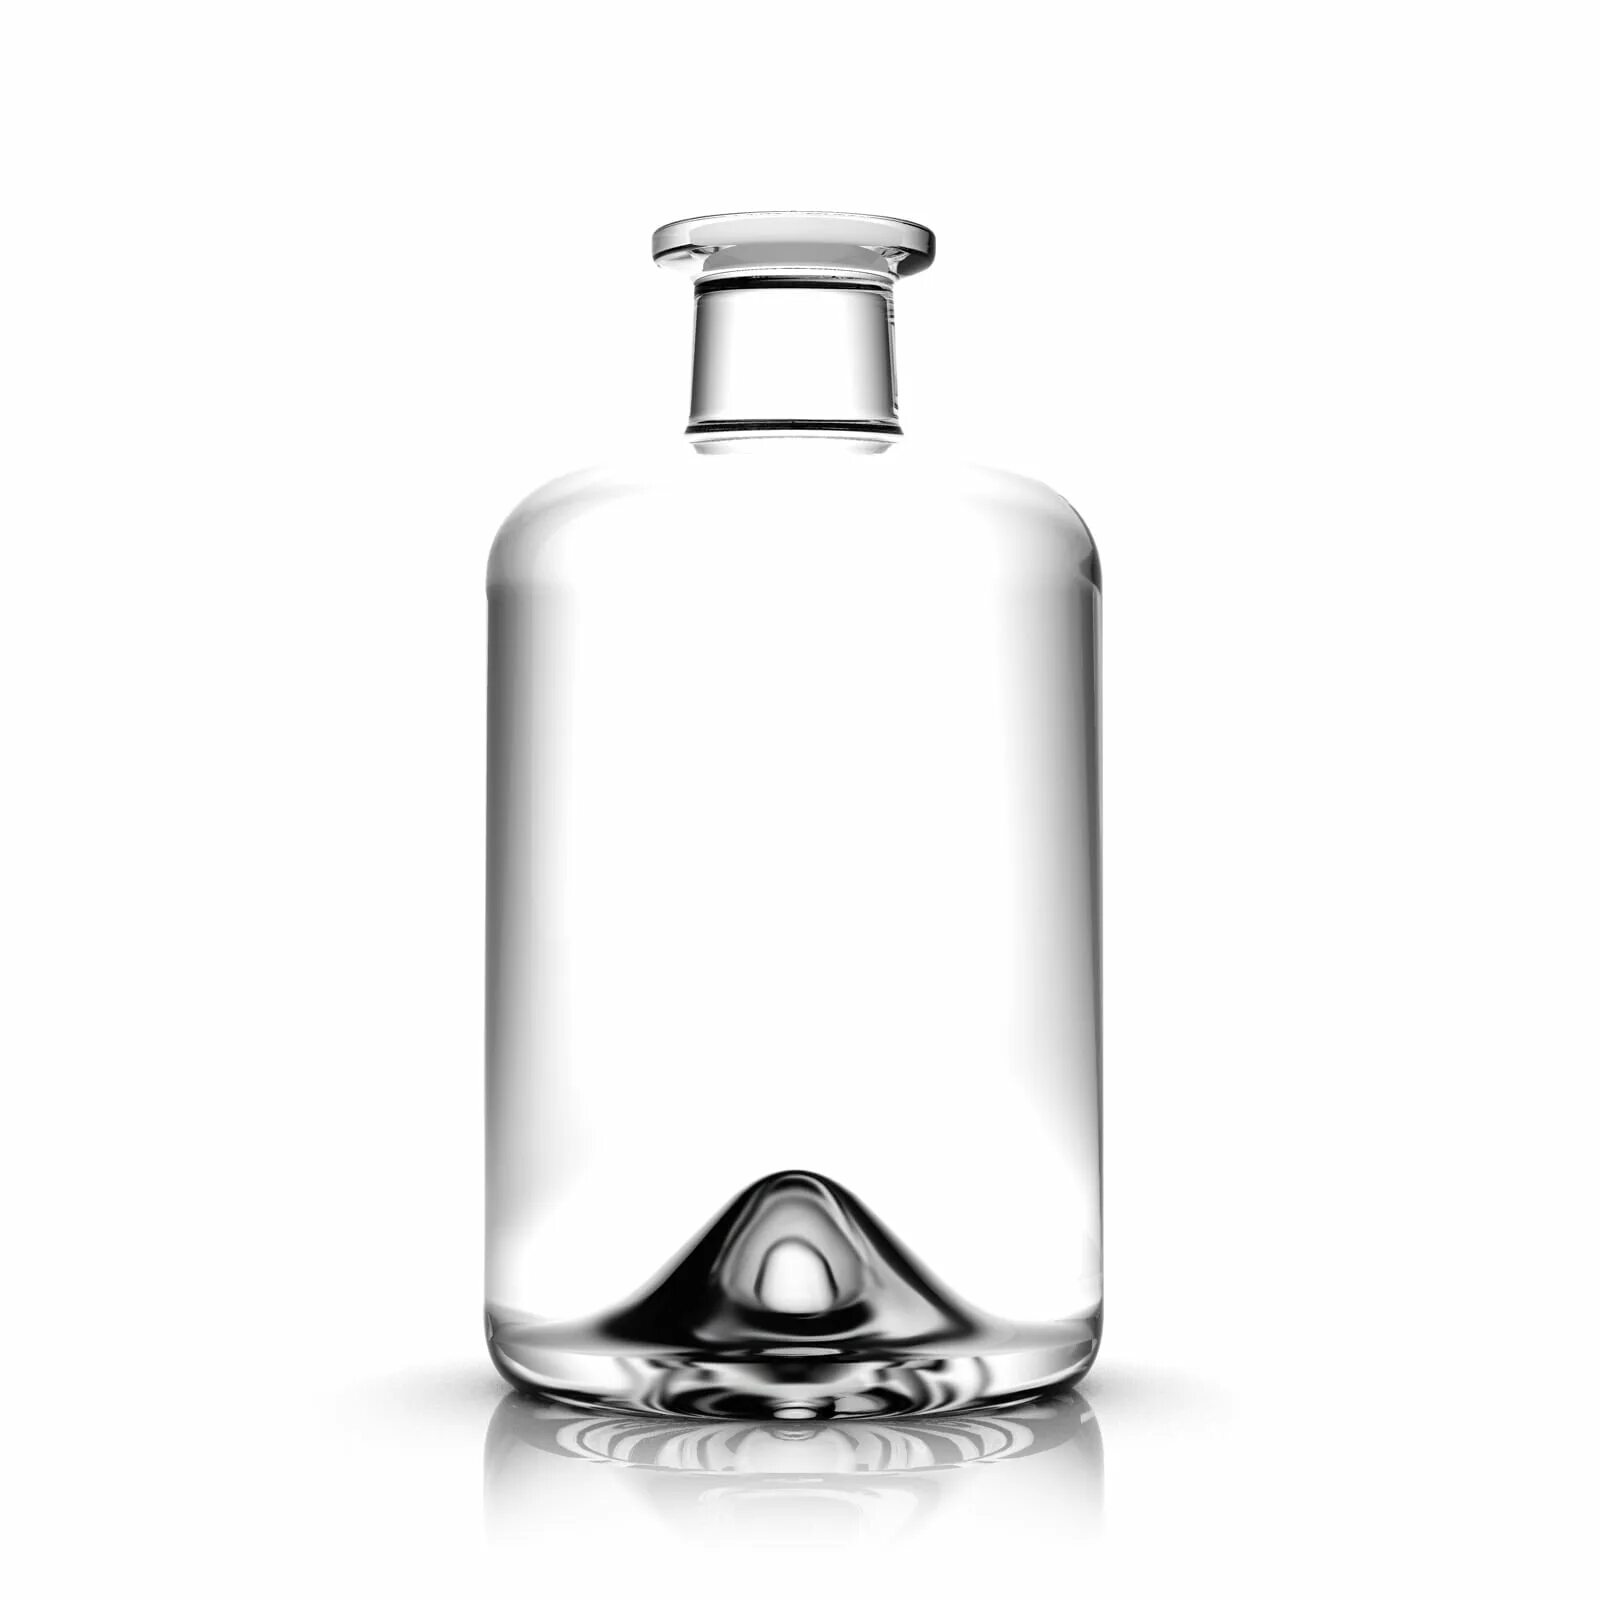 Бутылка стеклянная "аптека" 0,5л. Бутылка Орион. Бутылка 0.5 аптека с пробкой. Бутылка аптека 0.5 Гласс декор. Бутылочки аптека купить